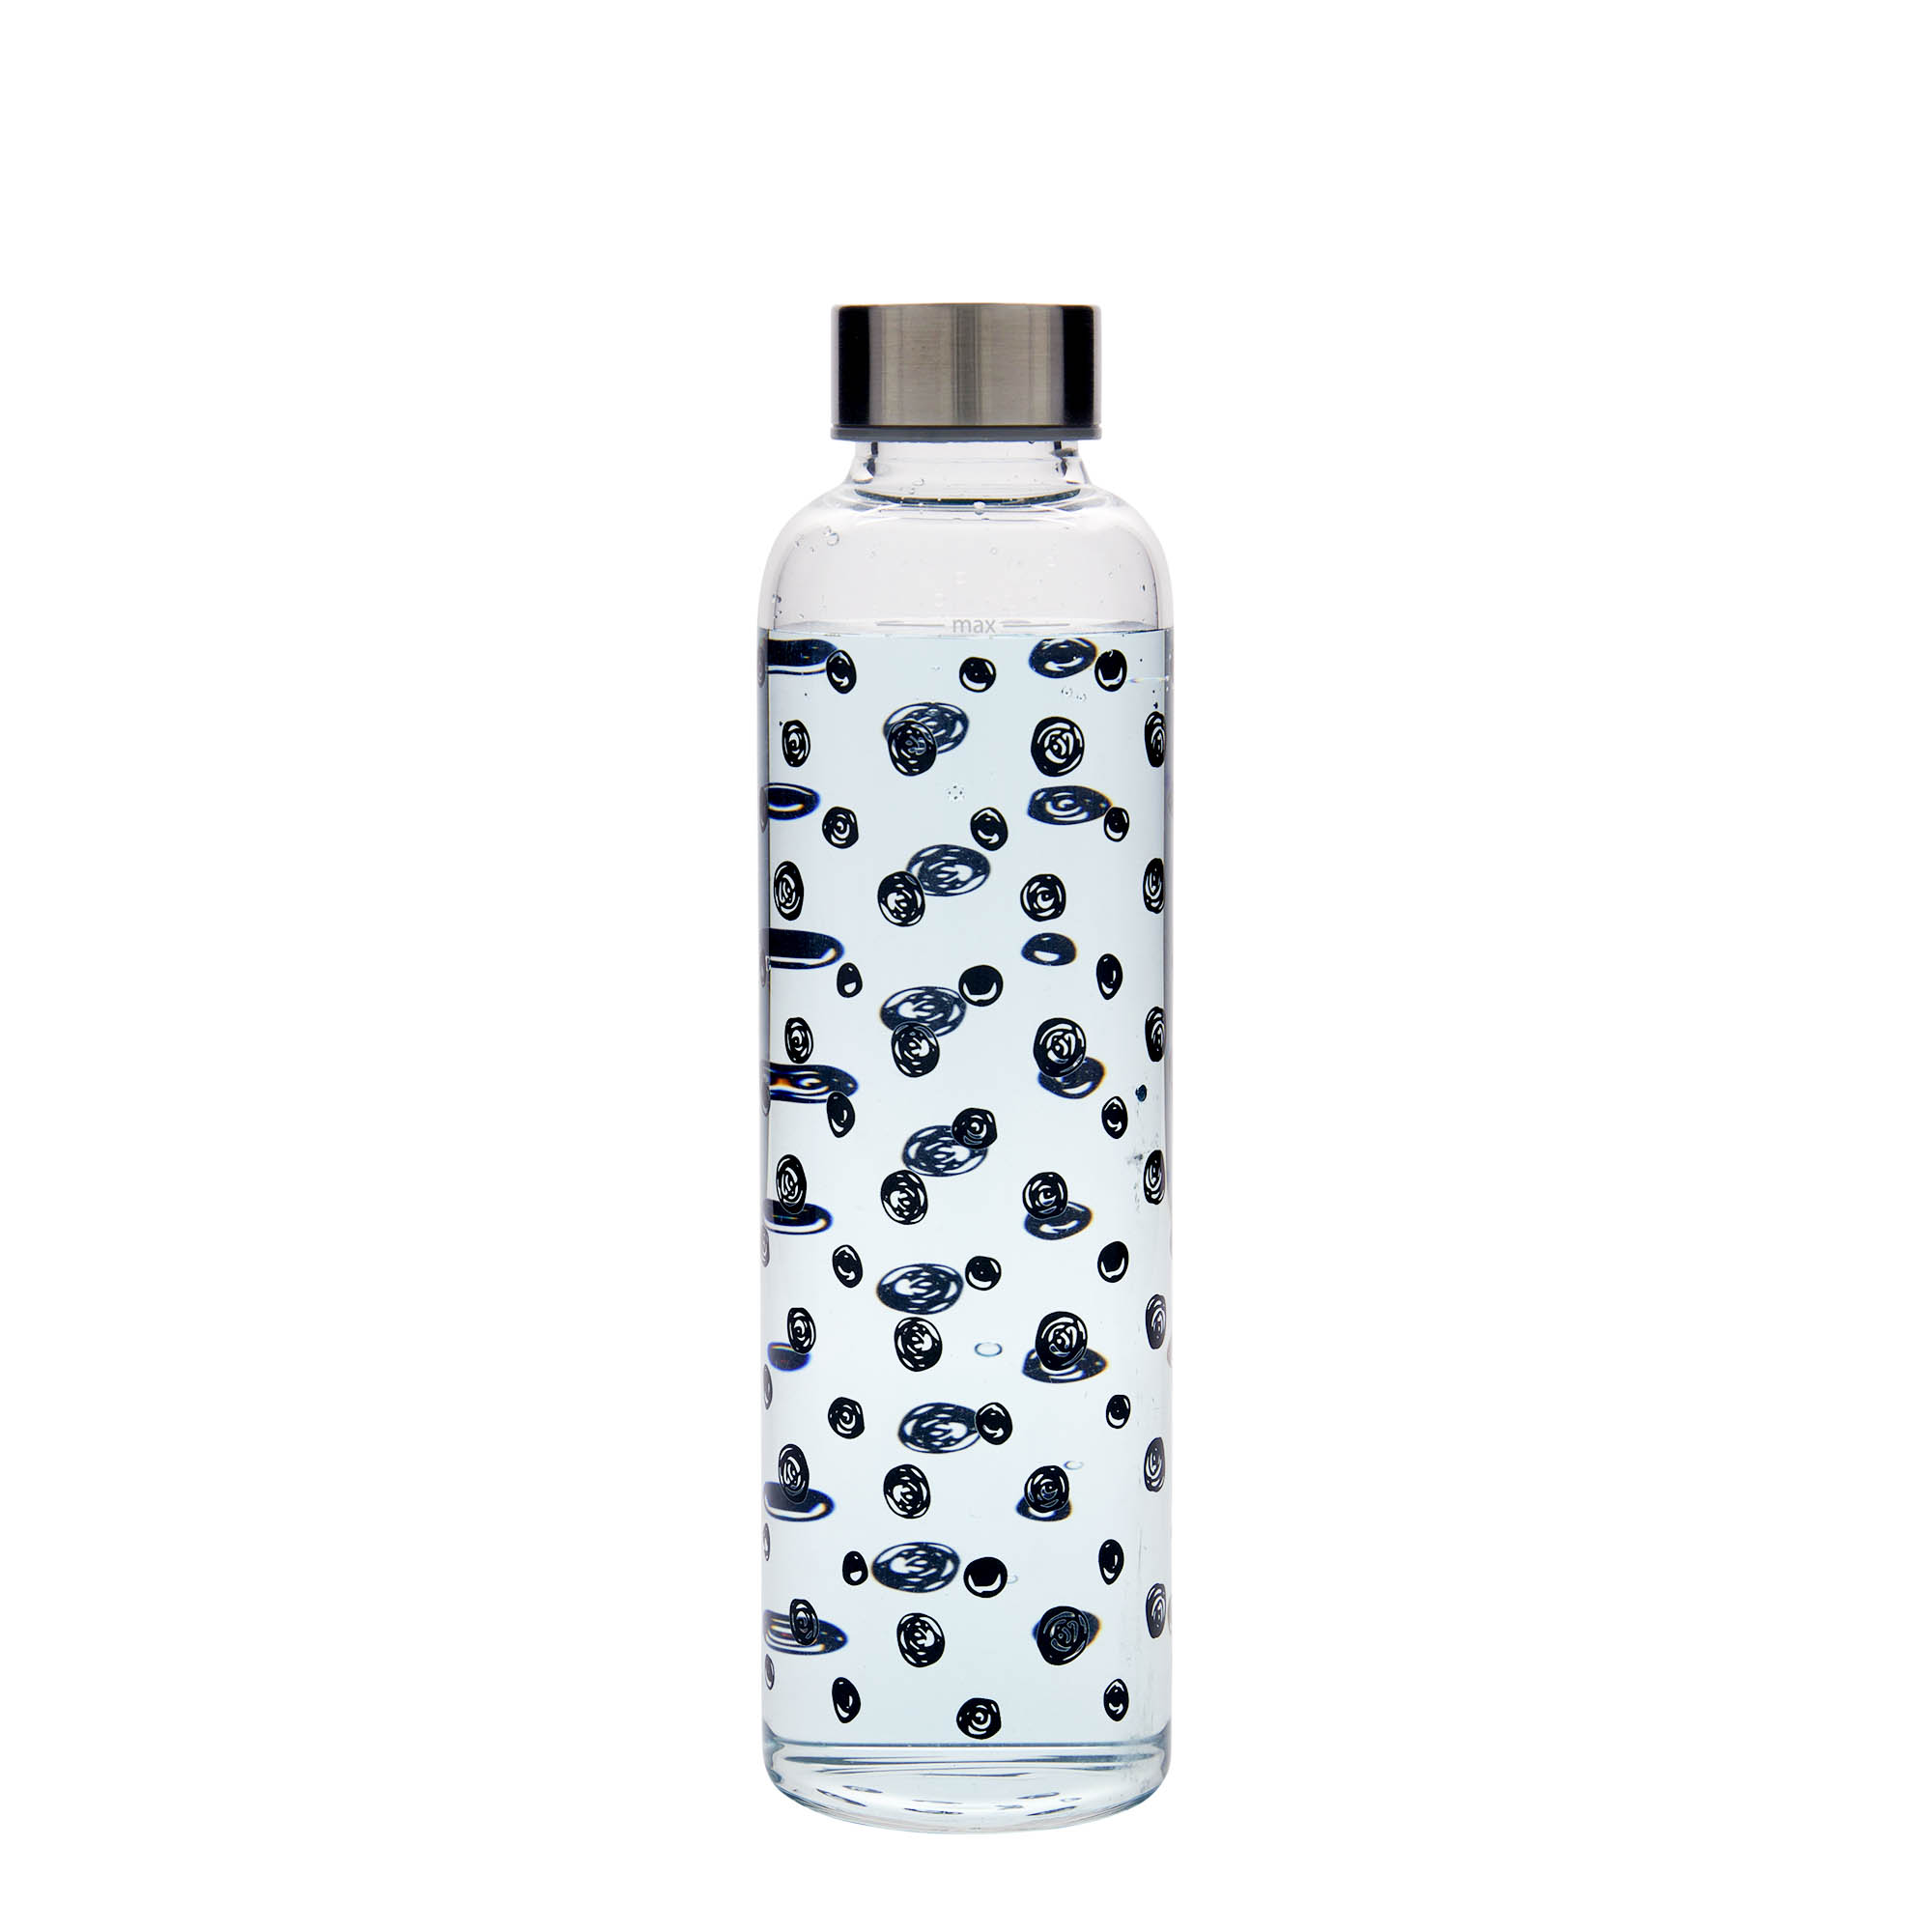 500 ml-es ivópalack, 'Perseus', motívum: Fekete pontok, szájnyílás: csavaros kupak